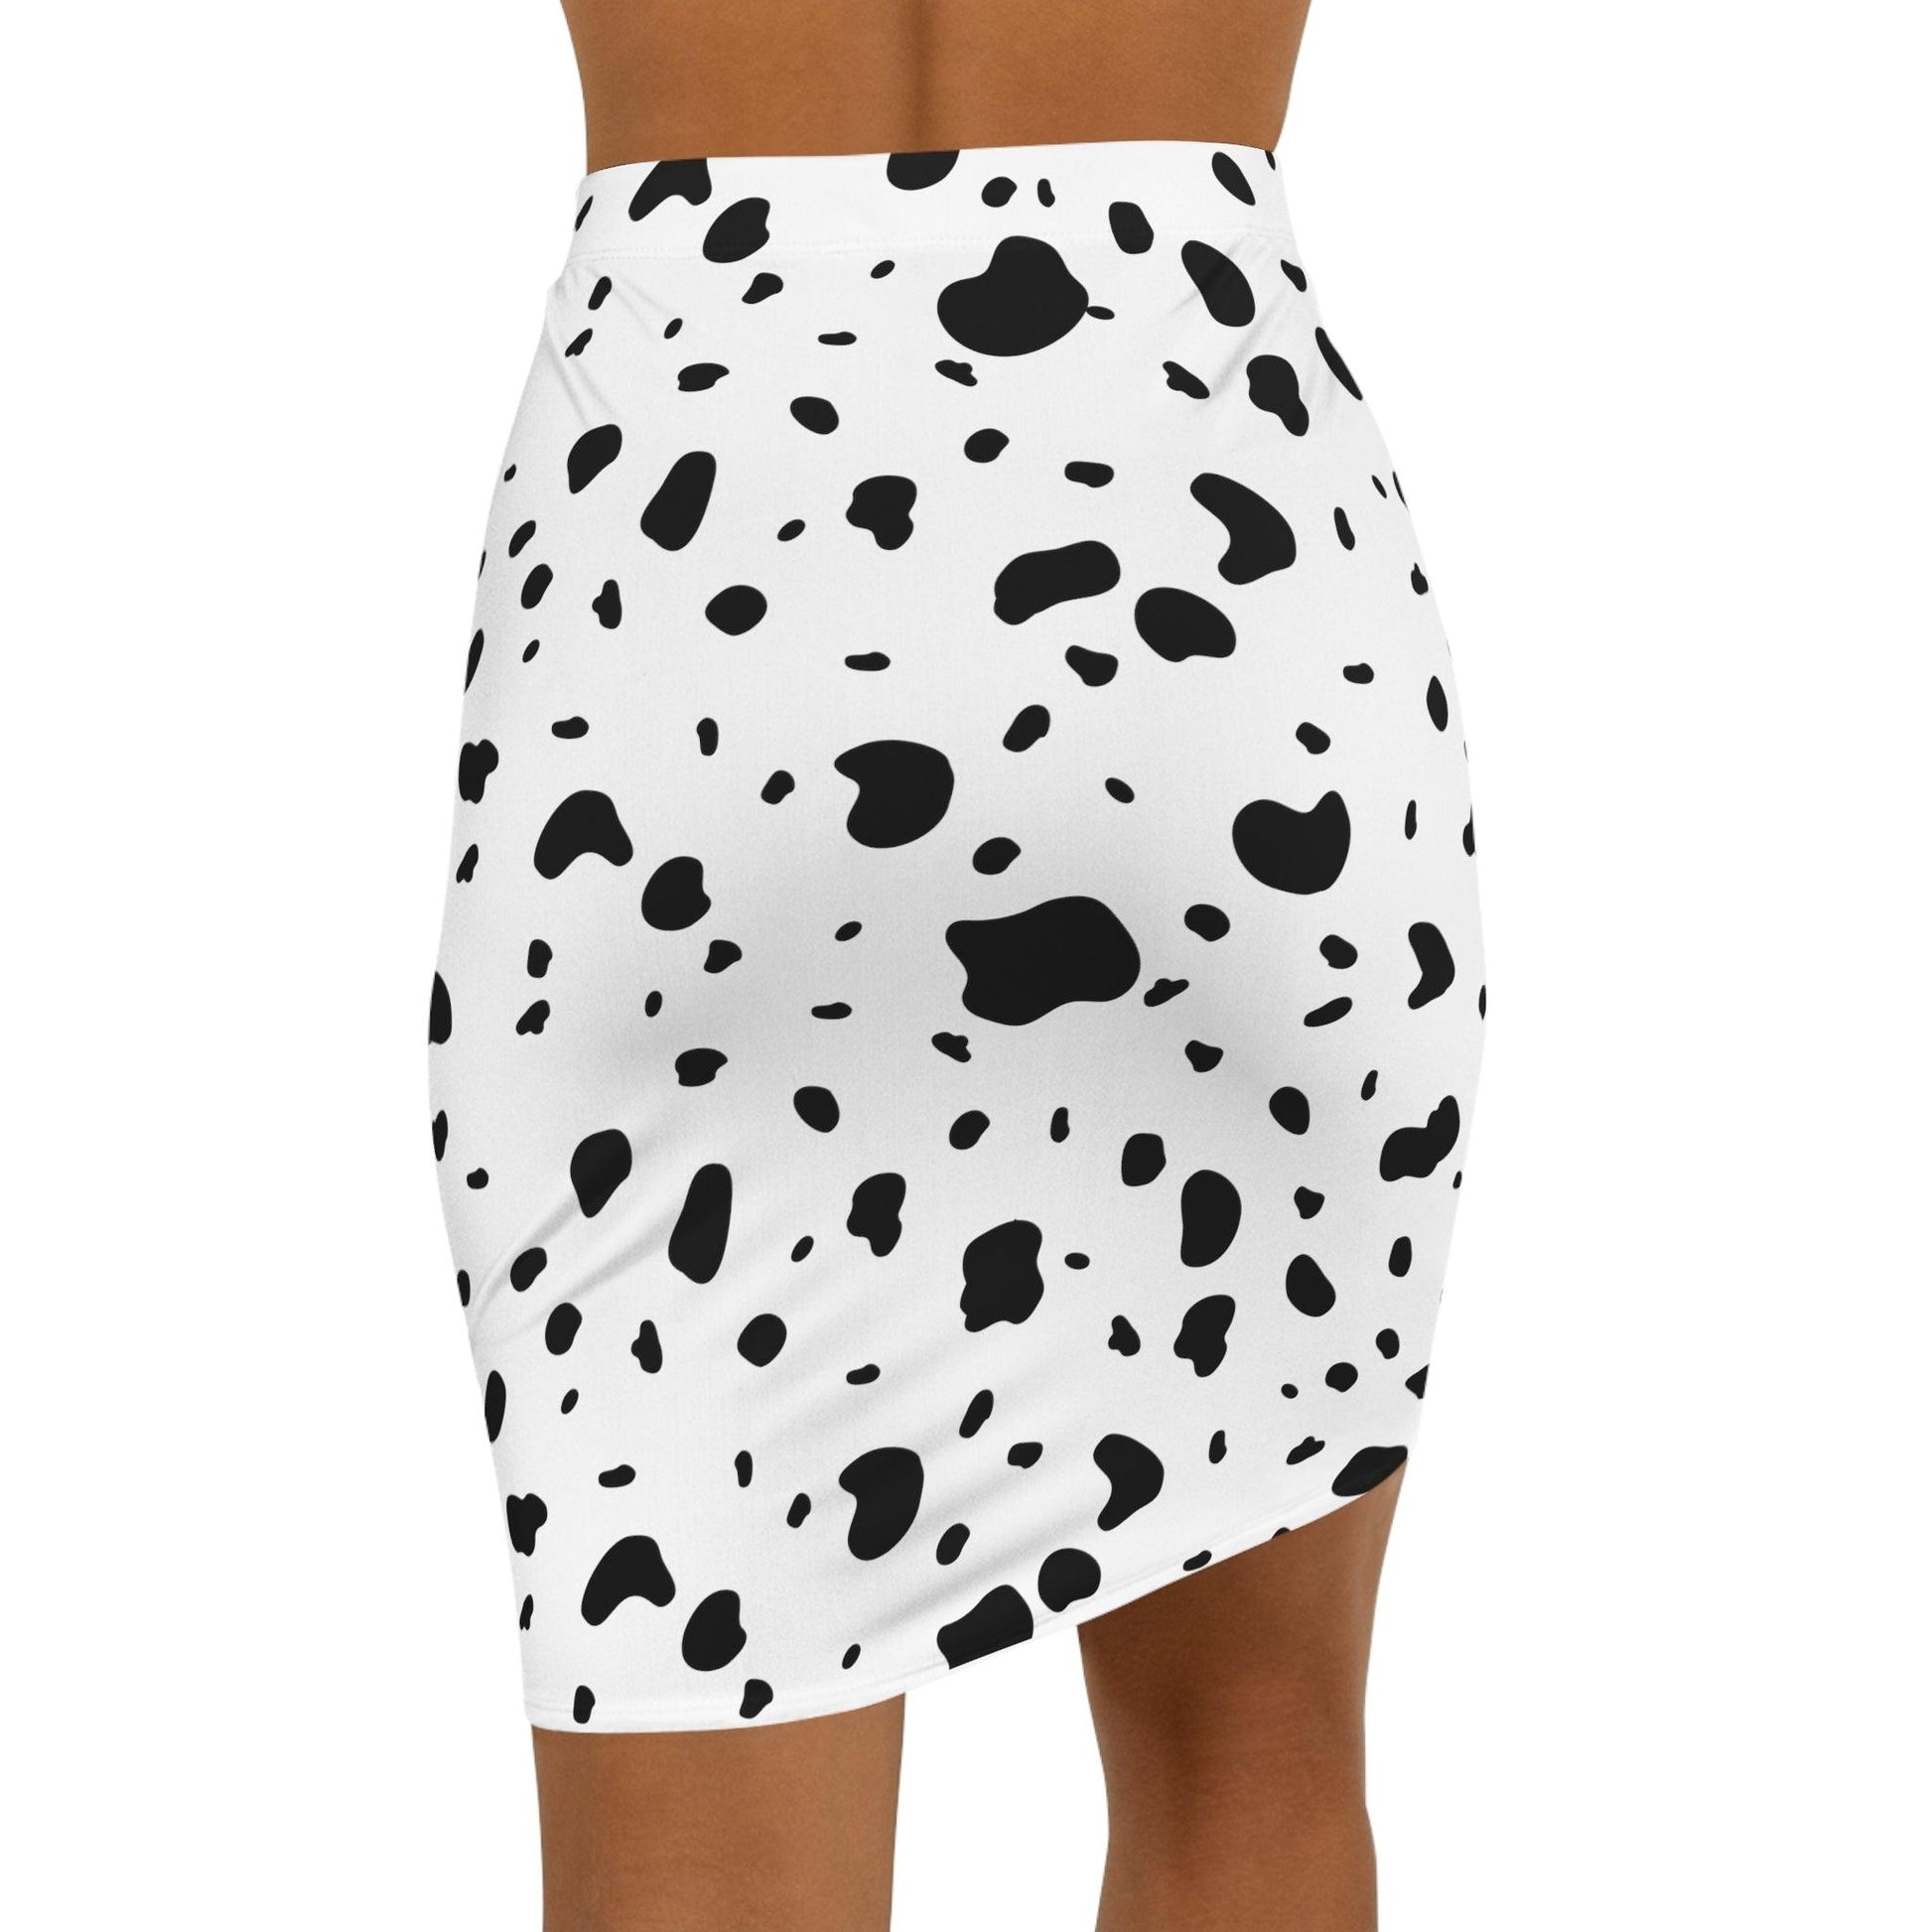 Dalmatian print skirt - BentleyBlueCo